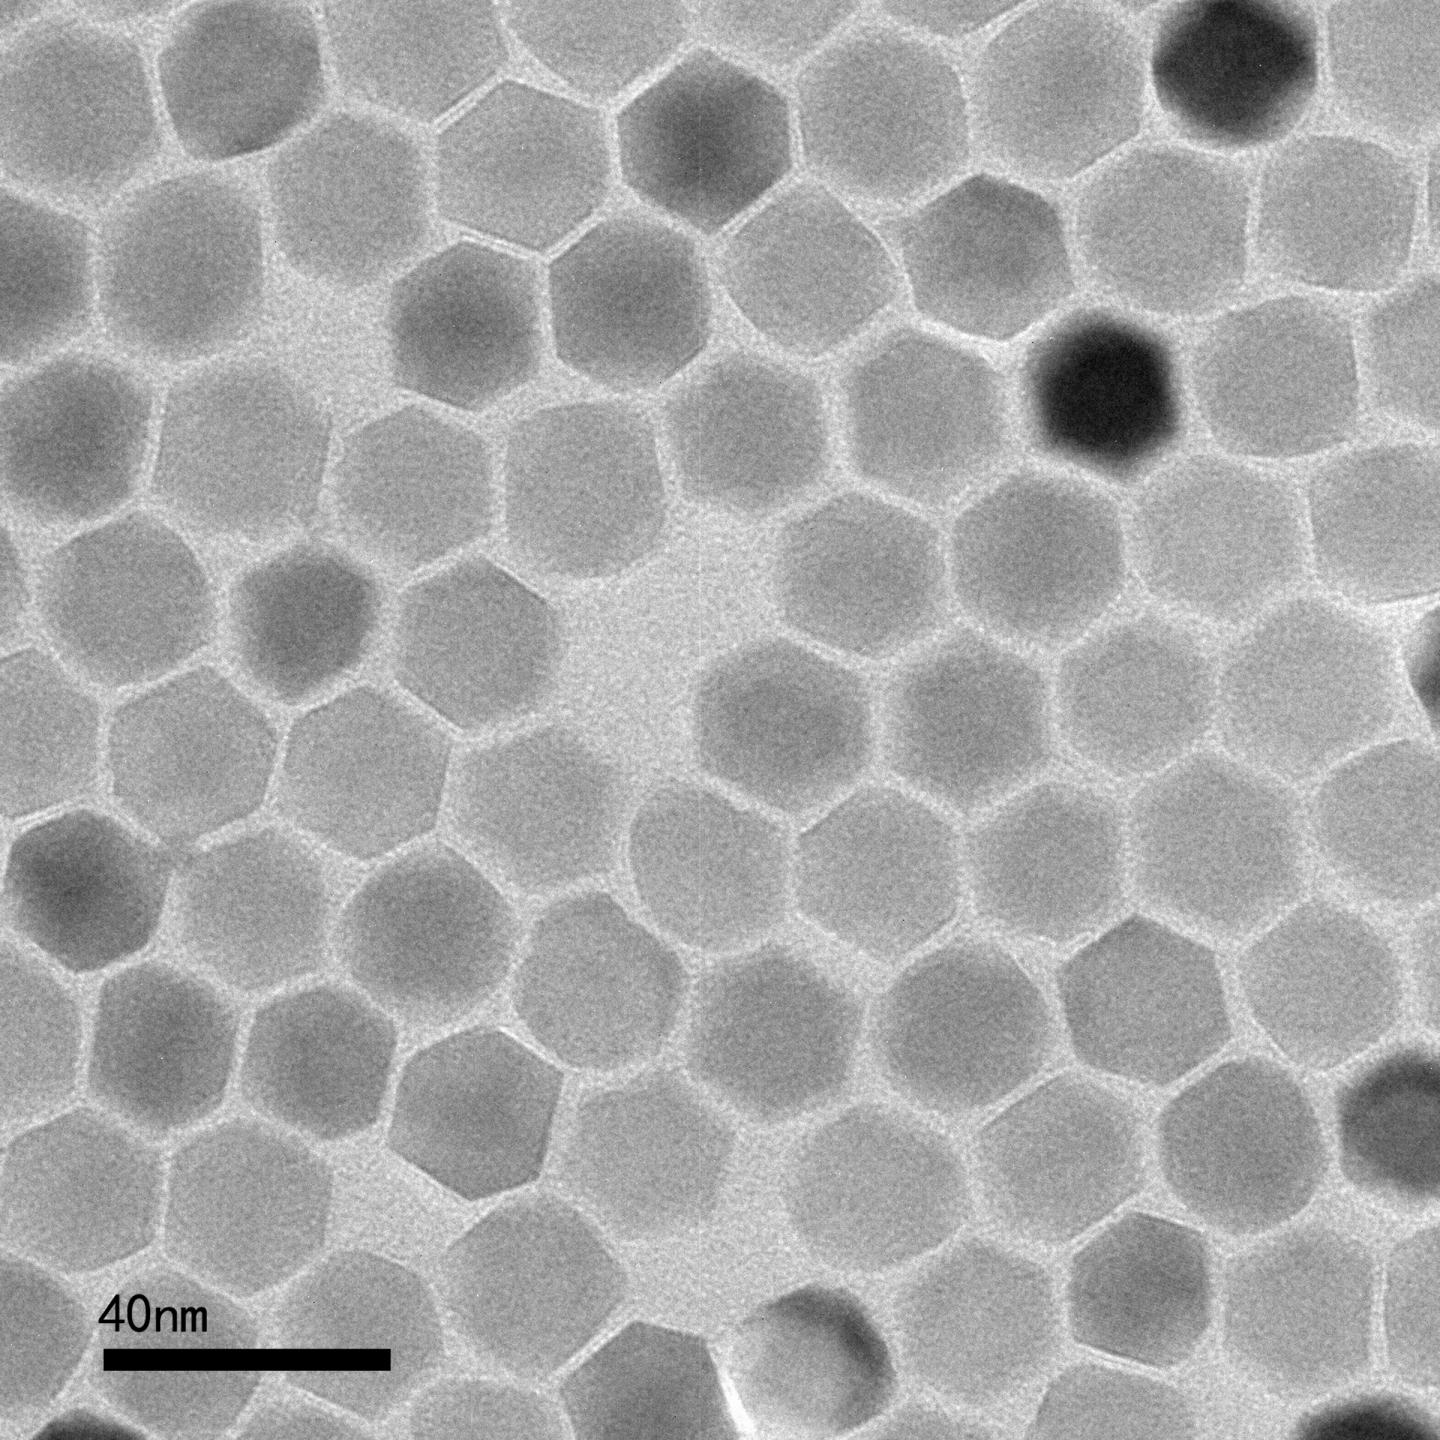 Zinc Ferrite Nanoparticles